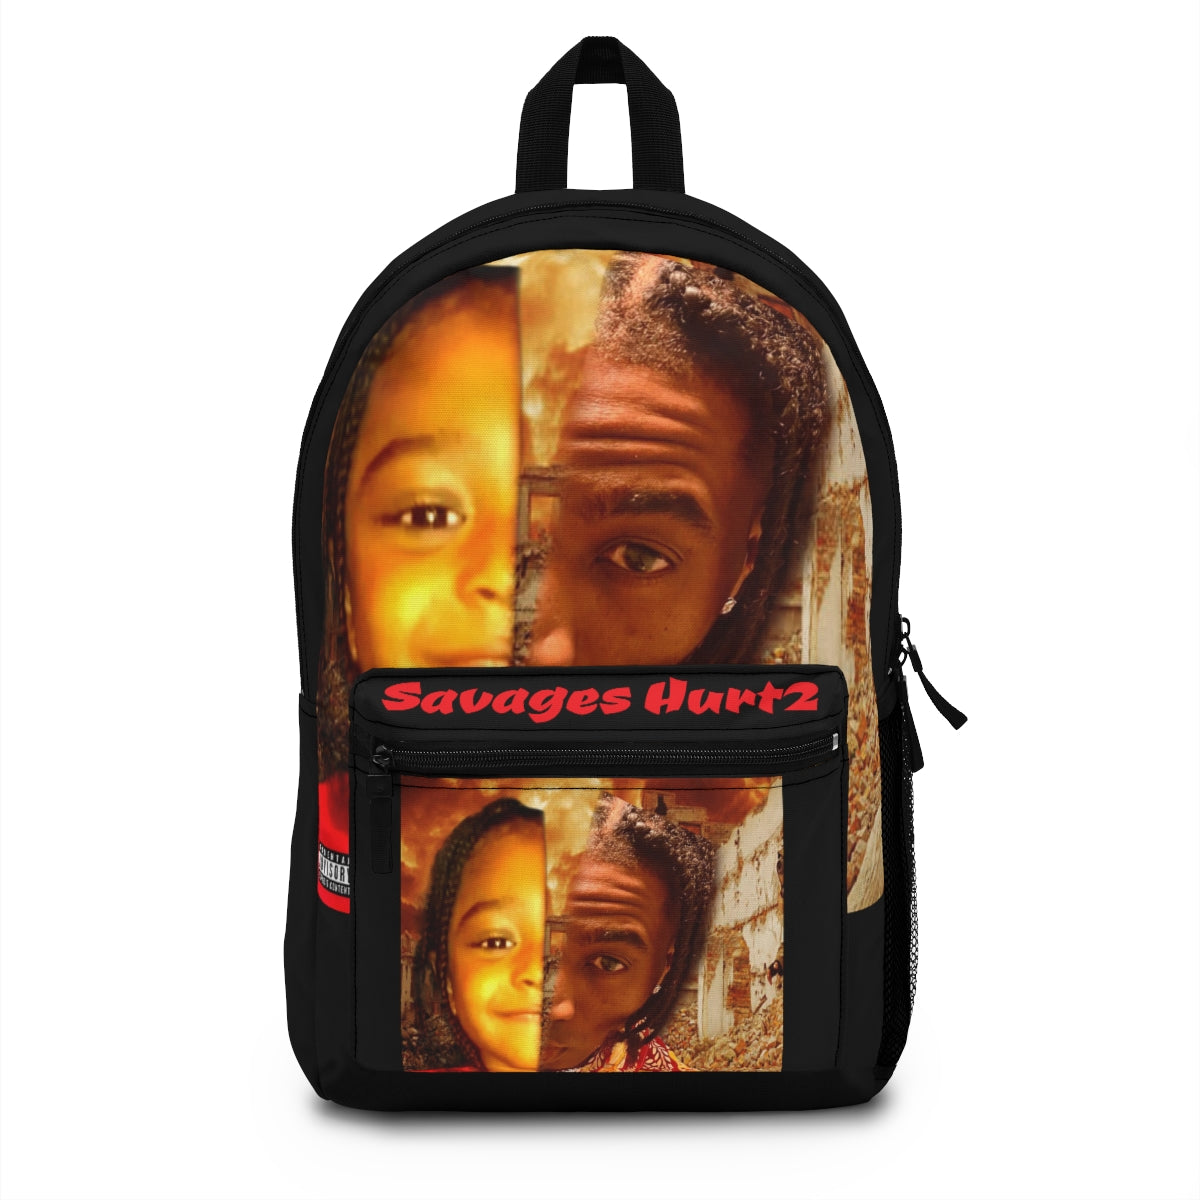 Backpack.Big King Dre Savage (Savages Hurt2 Album)